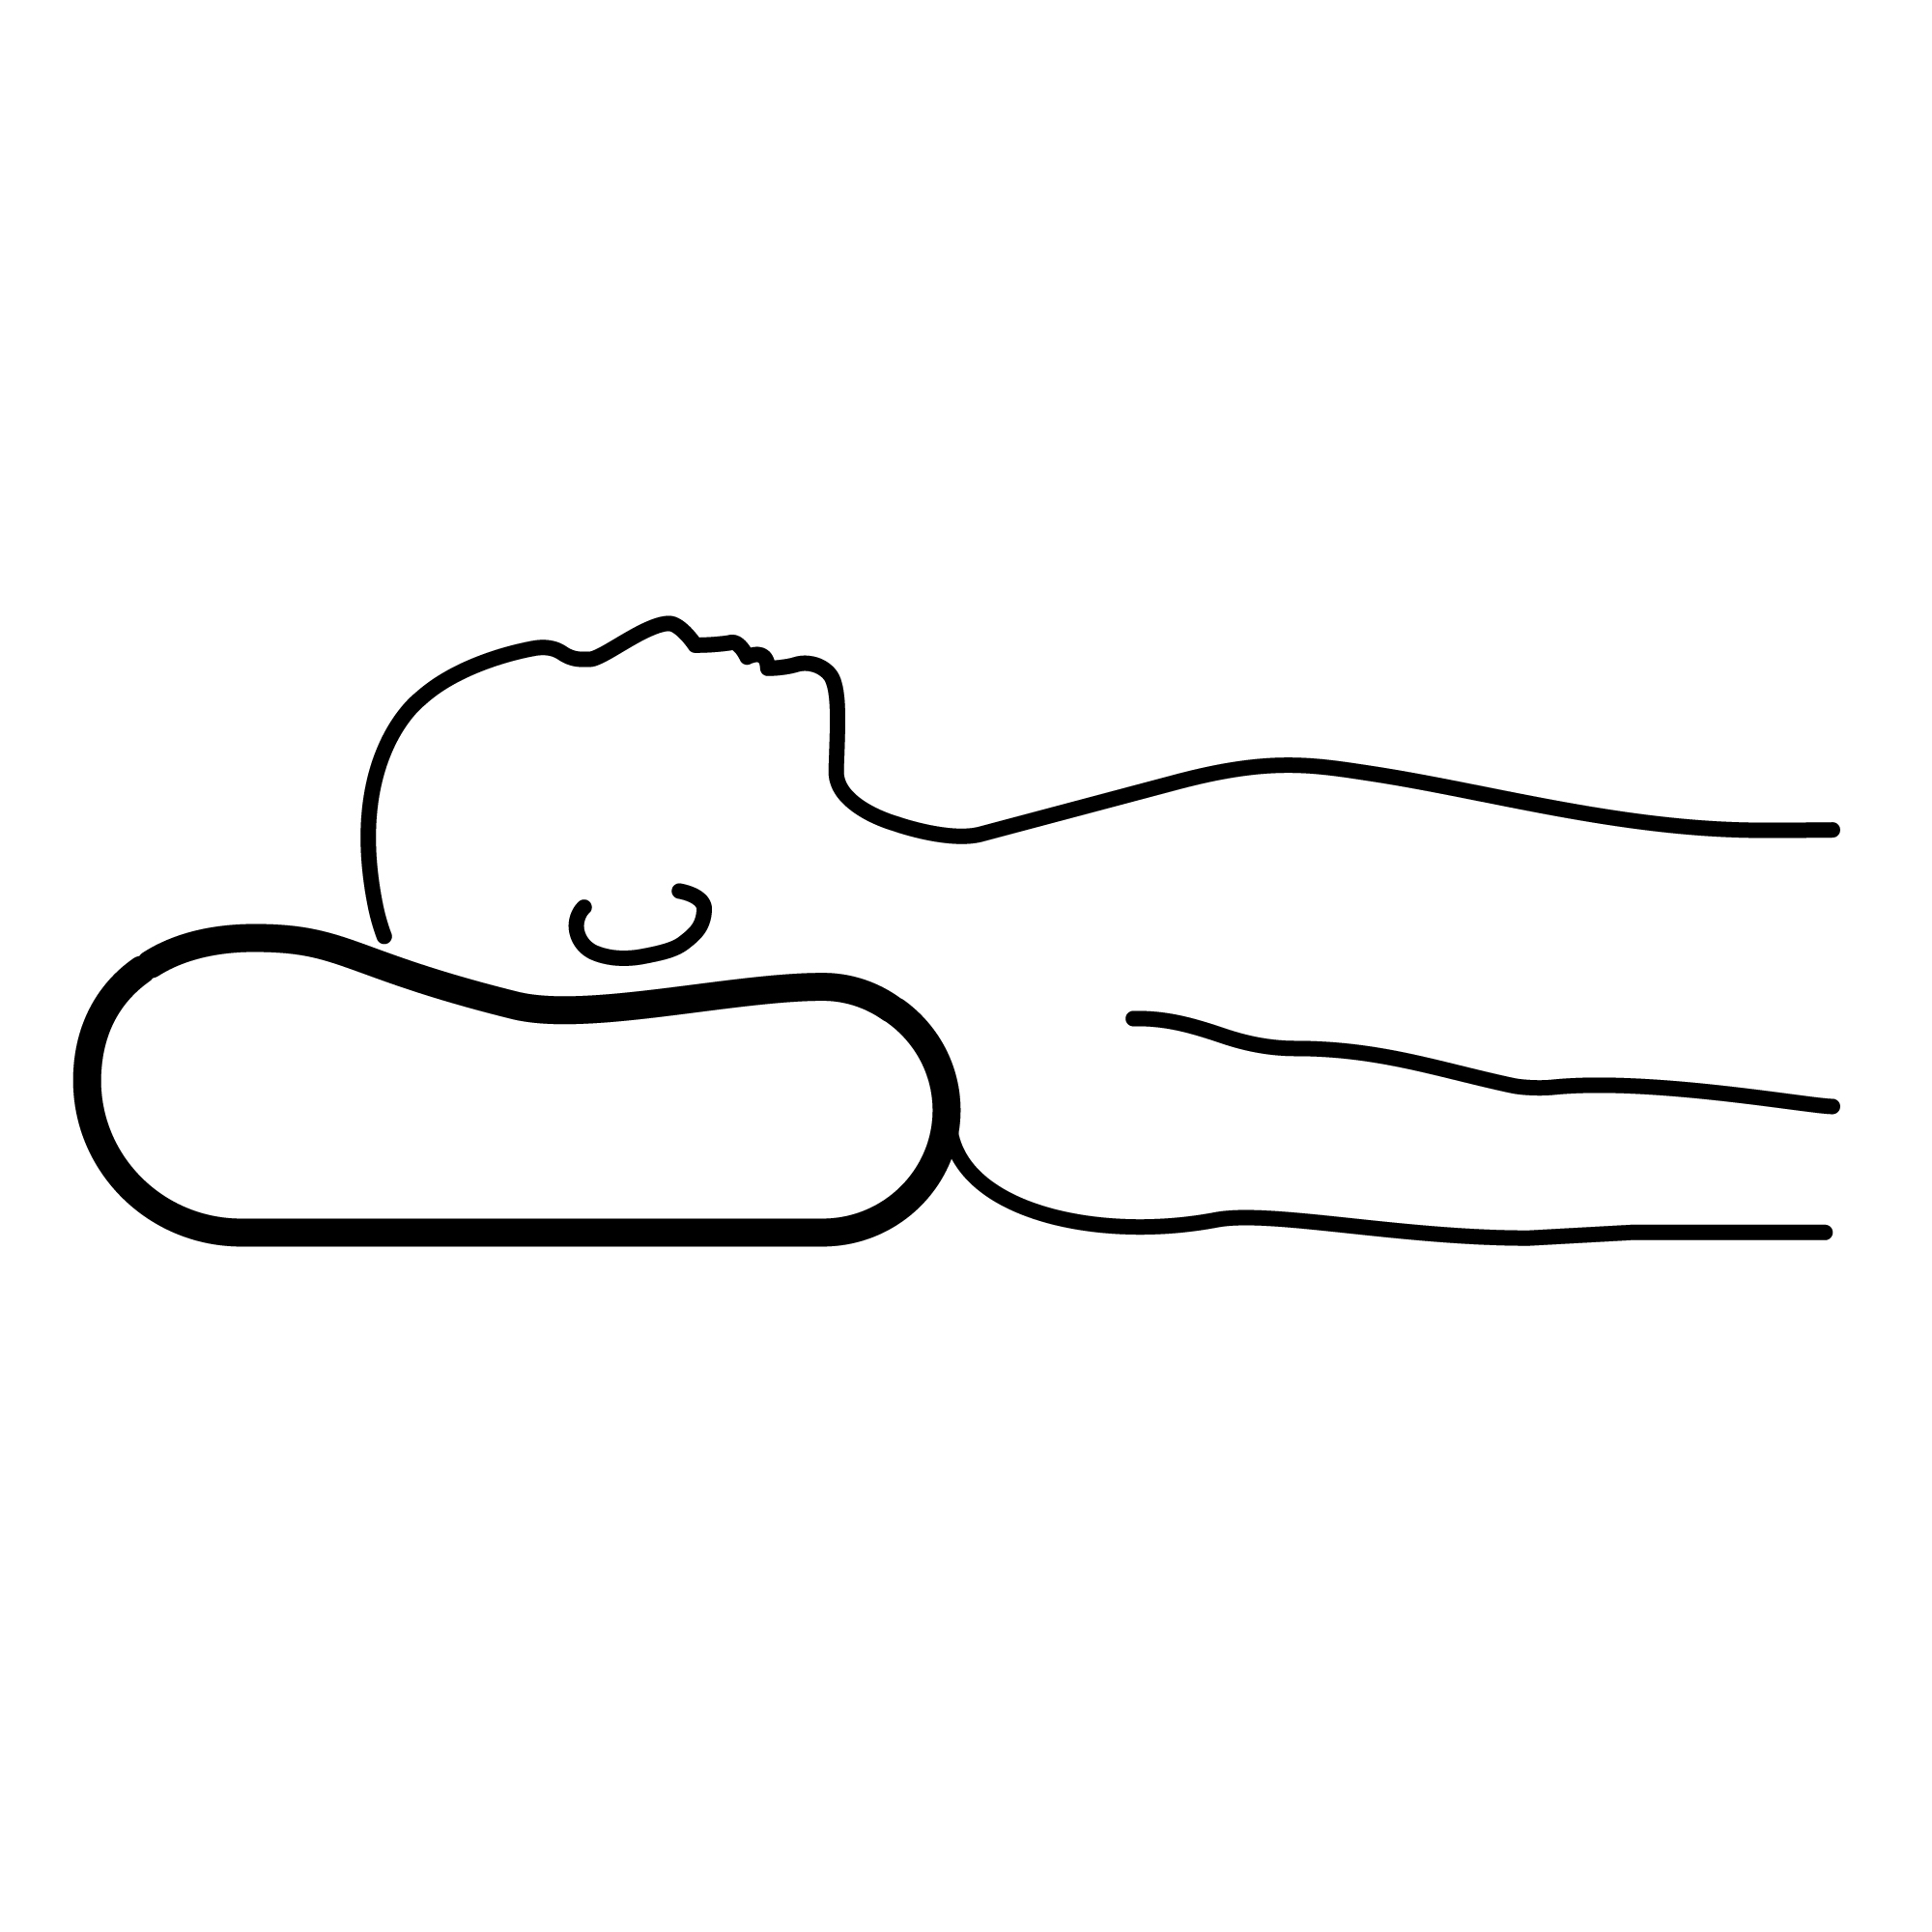 BJÖRKPYROLA ergonomic pillow, side/back sleeper